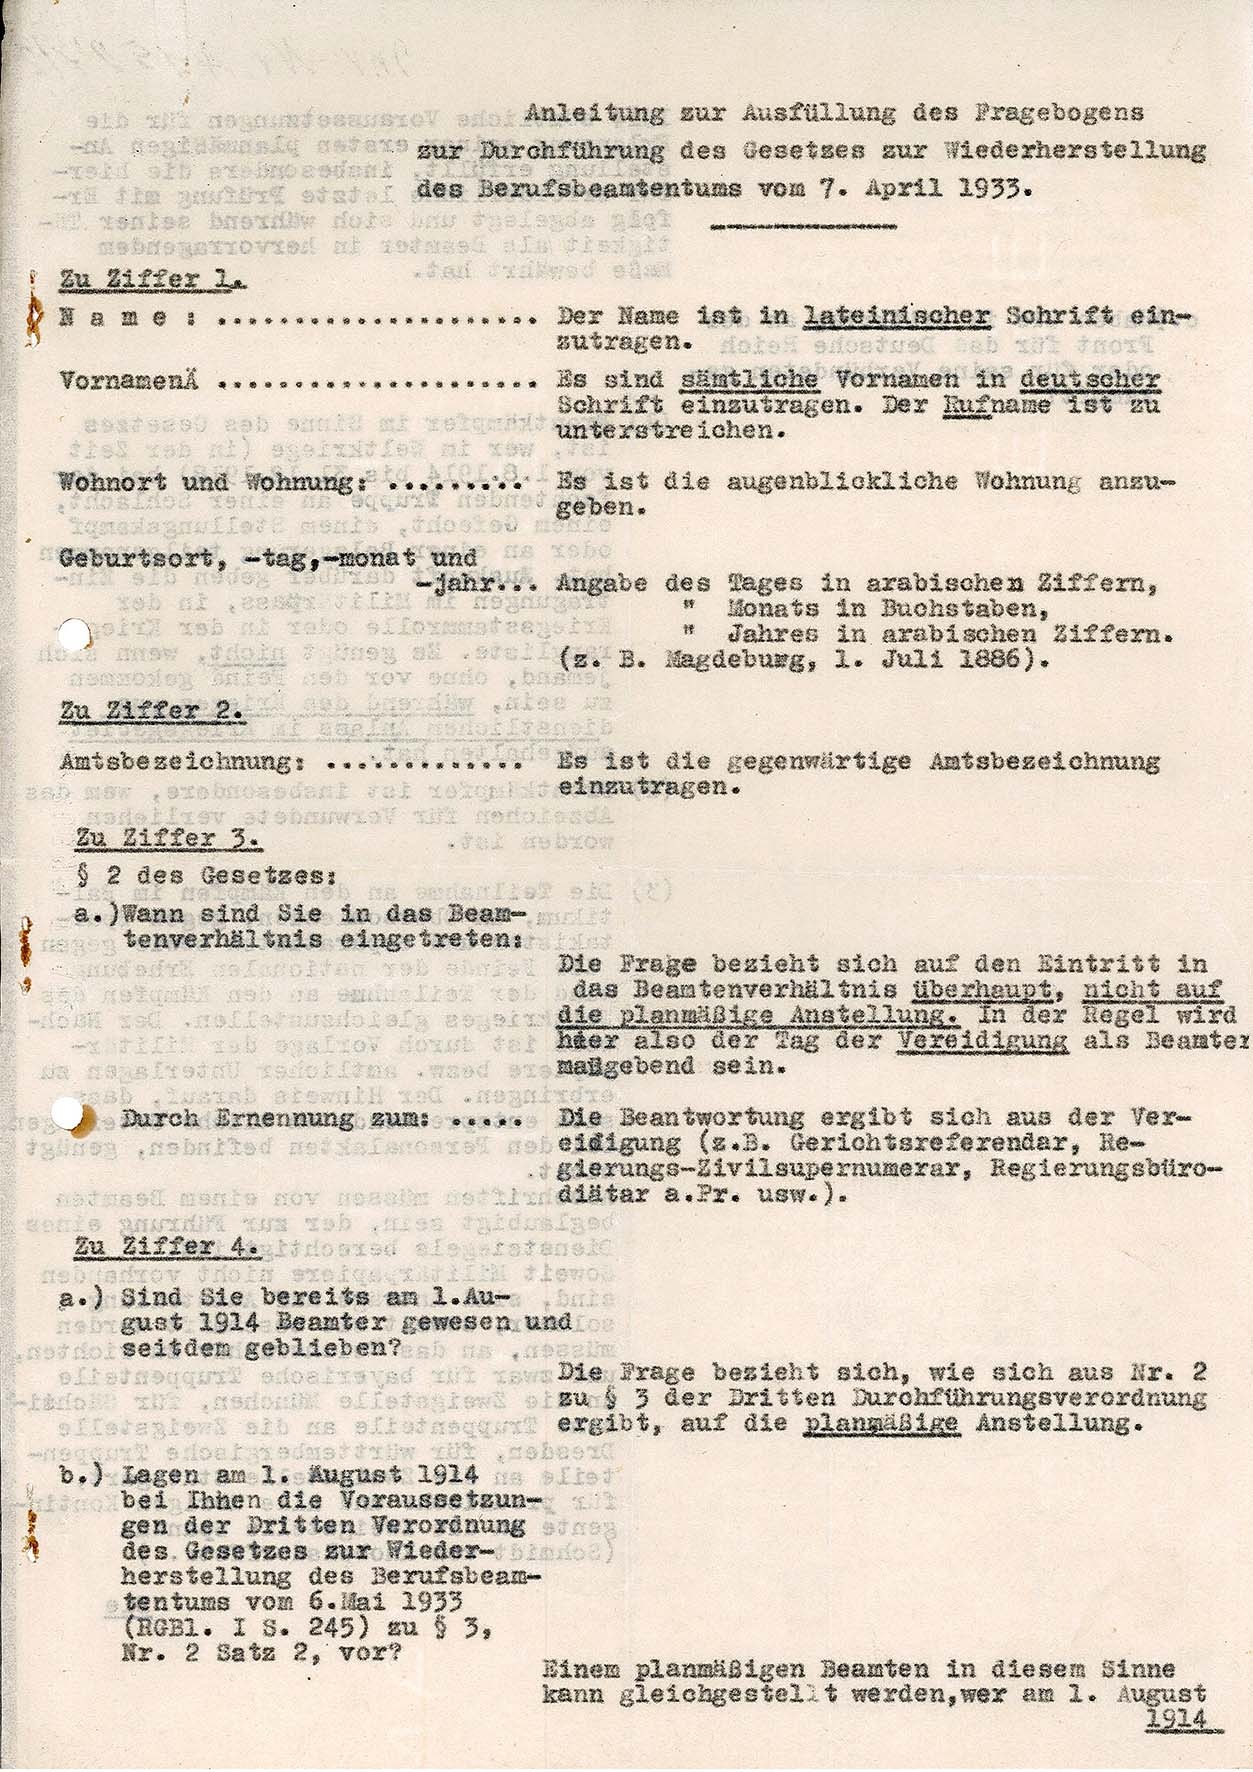 Anleitung zur Ausfüllung Fragebogen Wiederherstellung des Berufsbeamtentums, 1933 (Museum Wolmirstedt RR-F)